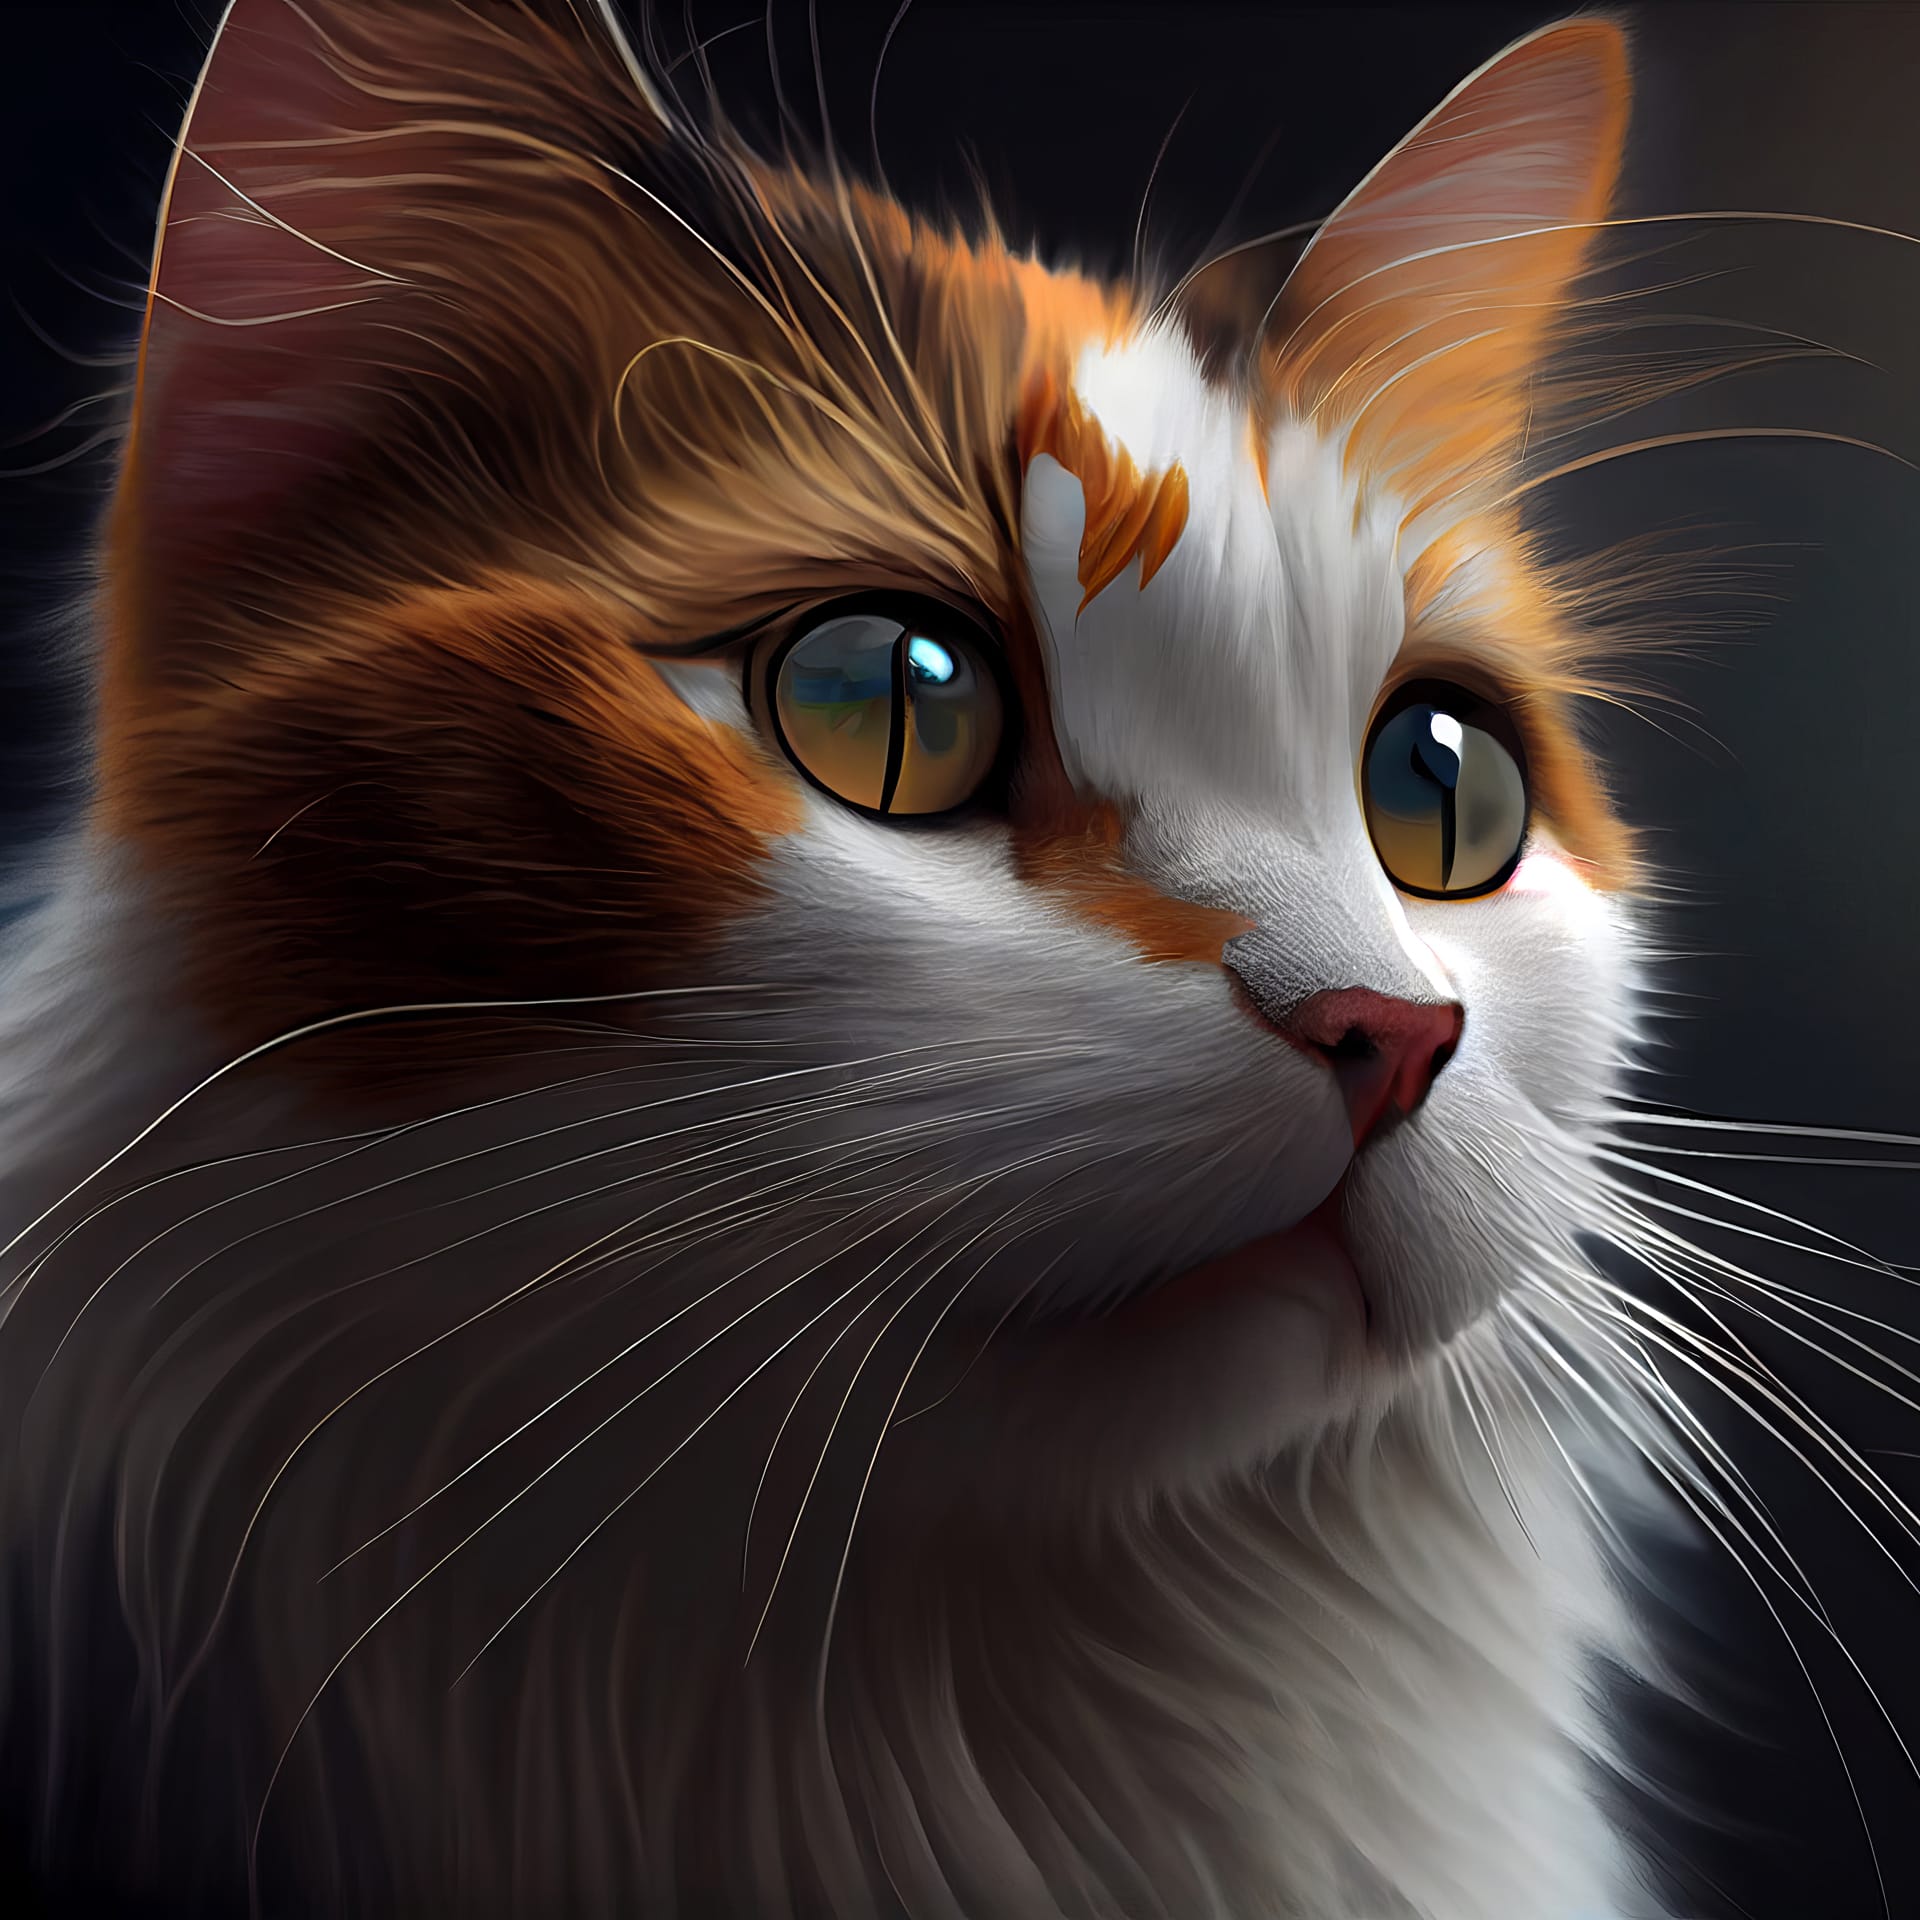 White orange fur long whiskers looking away against dark background